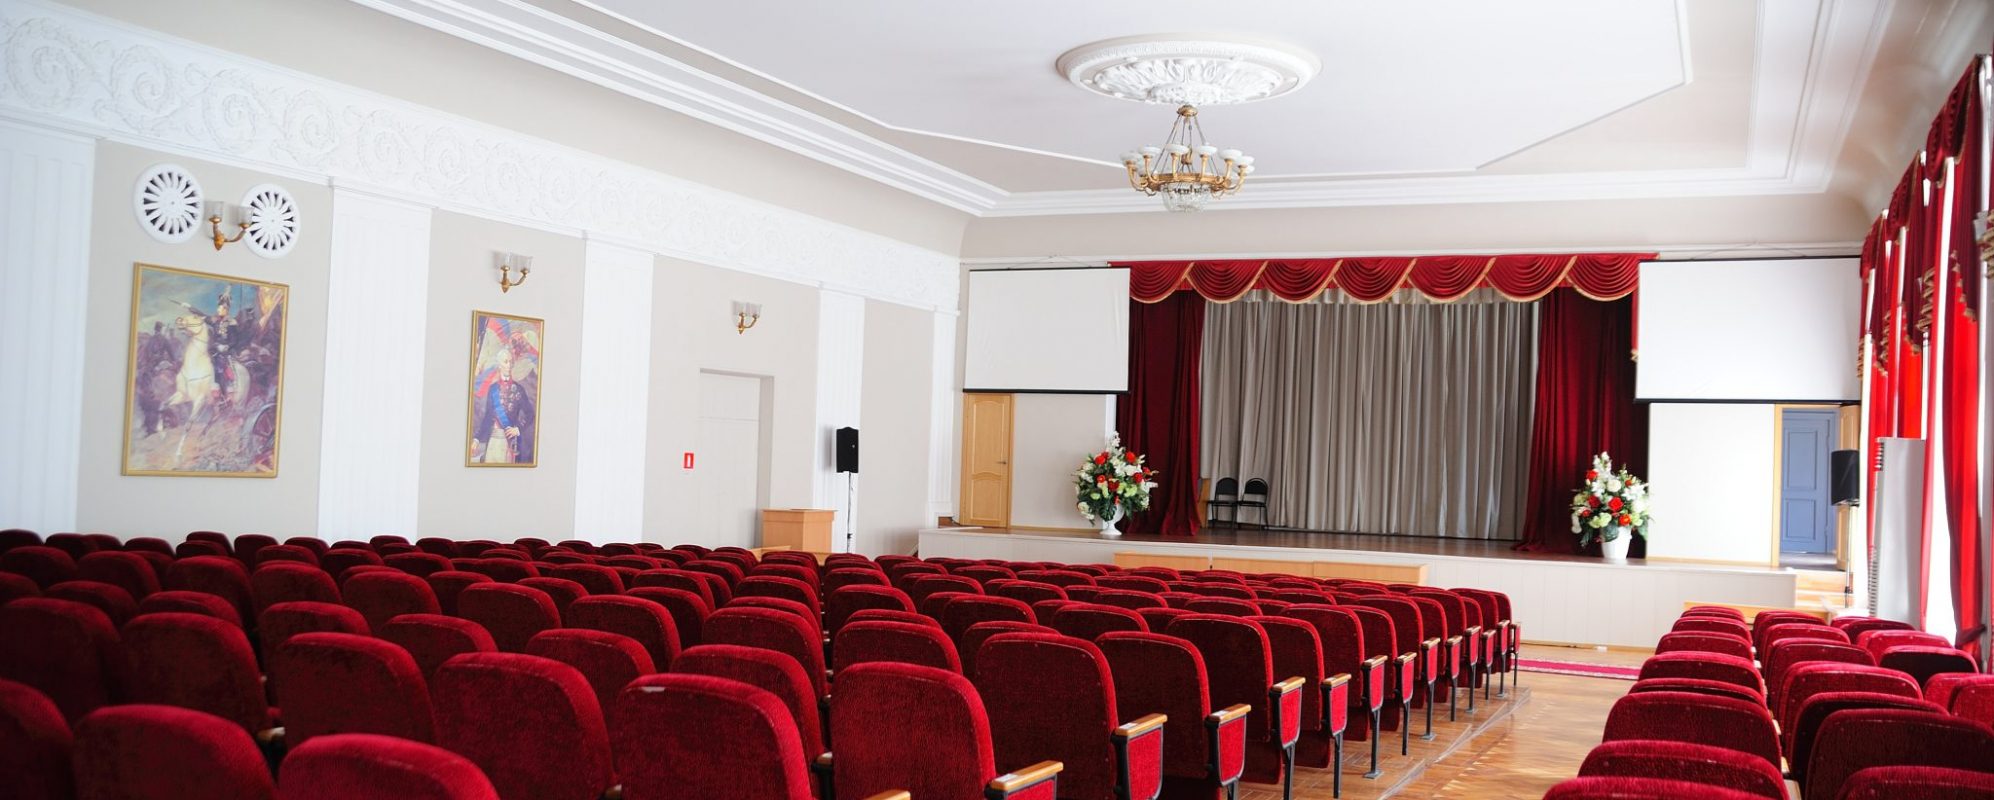 Фотографии концертного зала Малый концертный зал Дома офицеров Южного военного округа